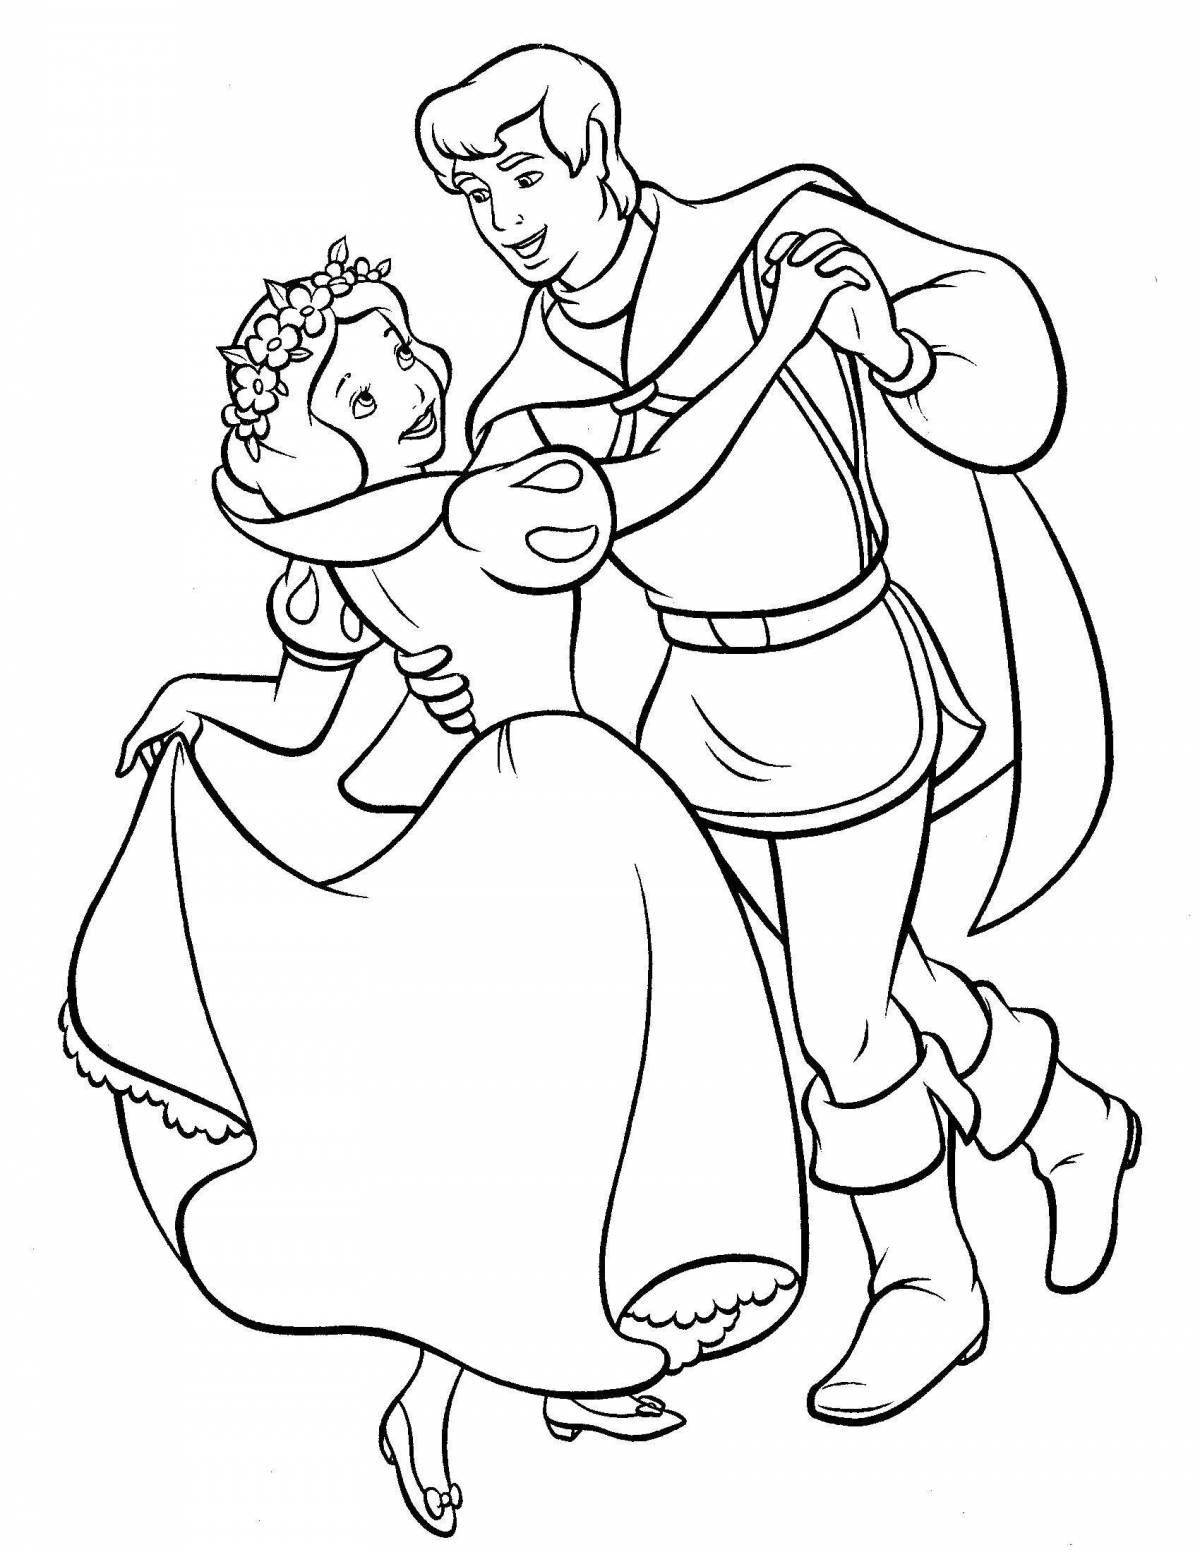 Joyful coloring princess and prince for kids